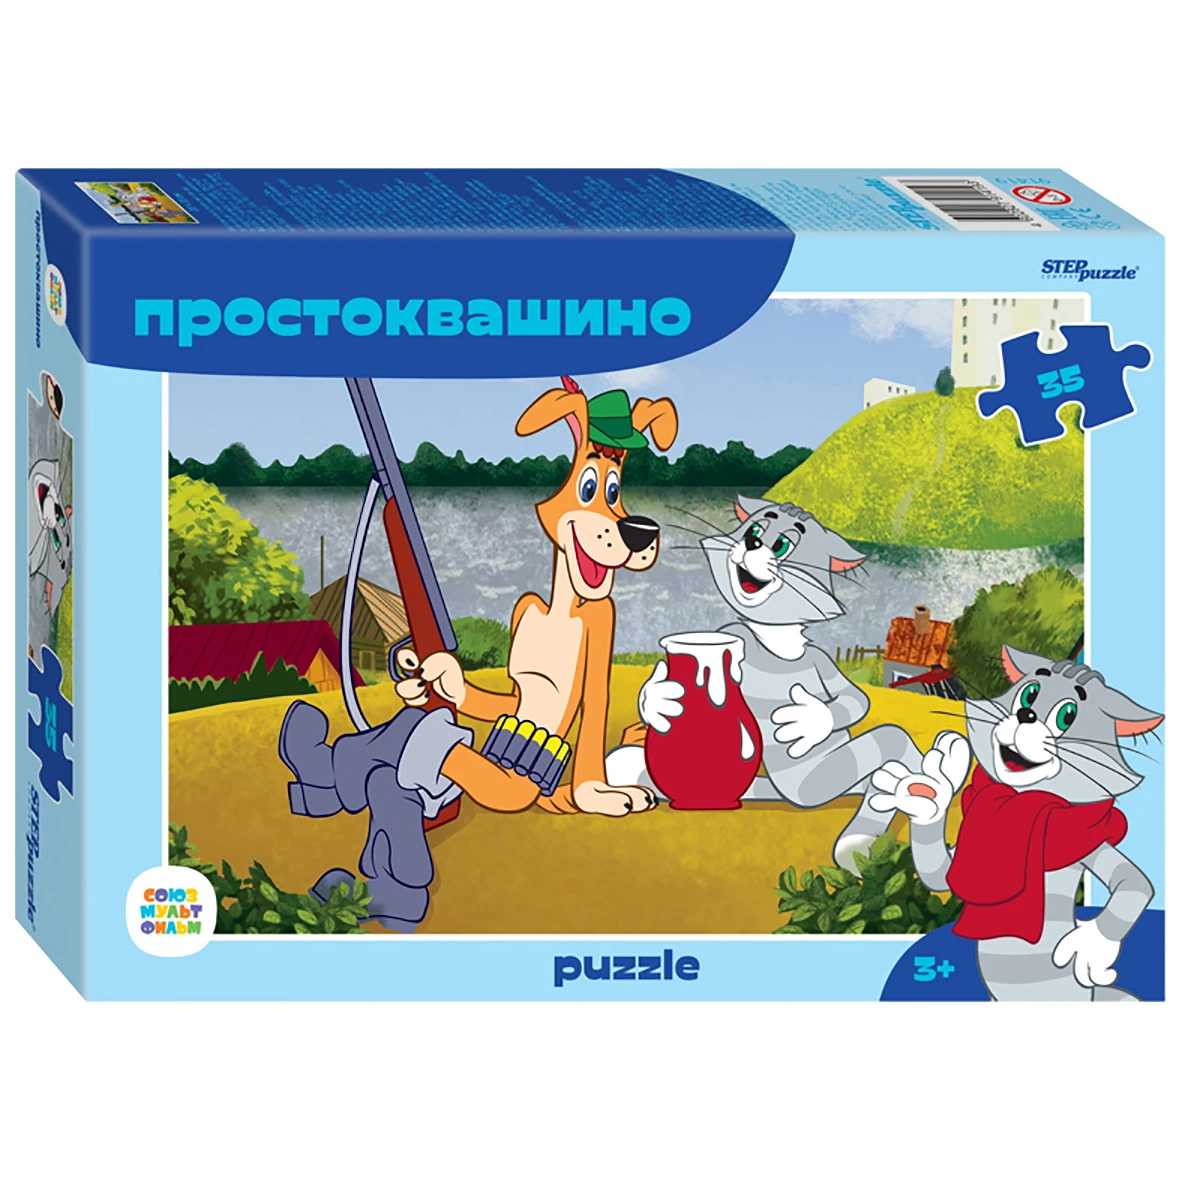 Арт.91419 Мозаика "puzzle" 35 "Простоквашино (new)" (С/м)